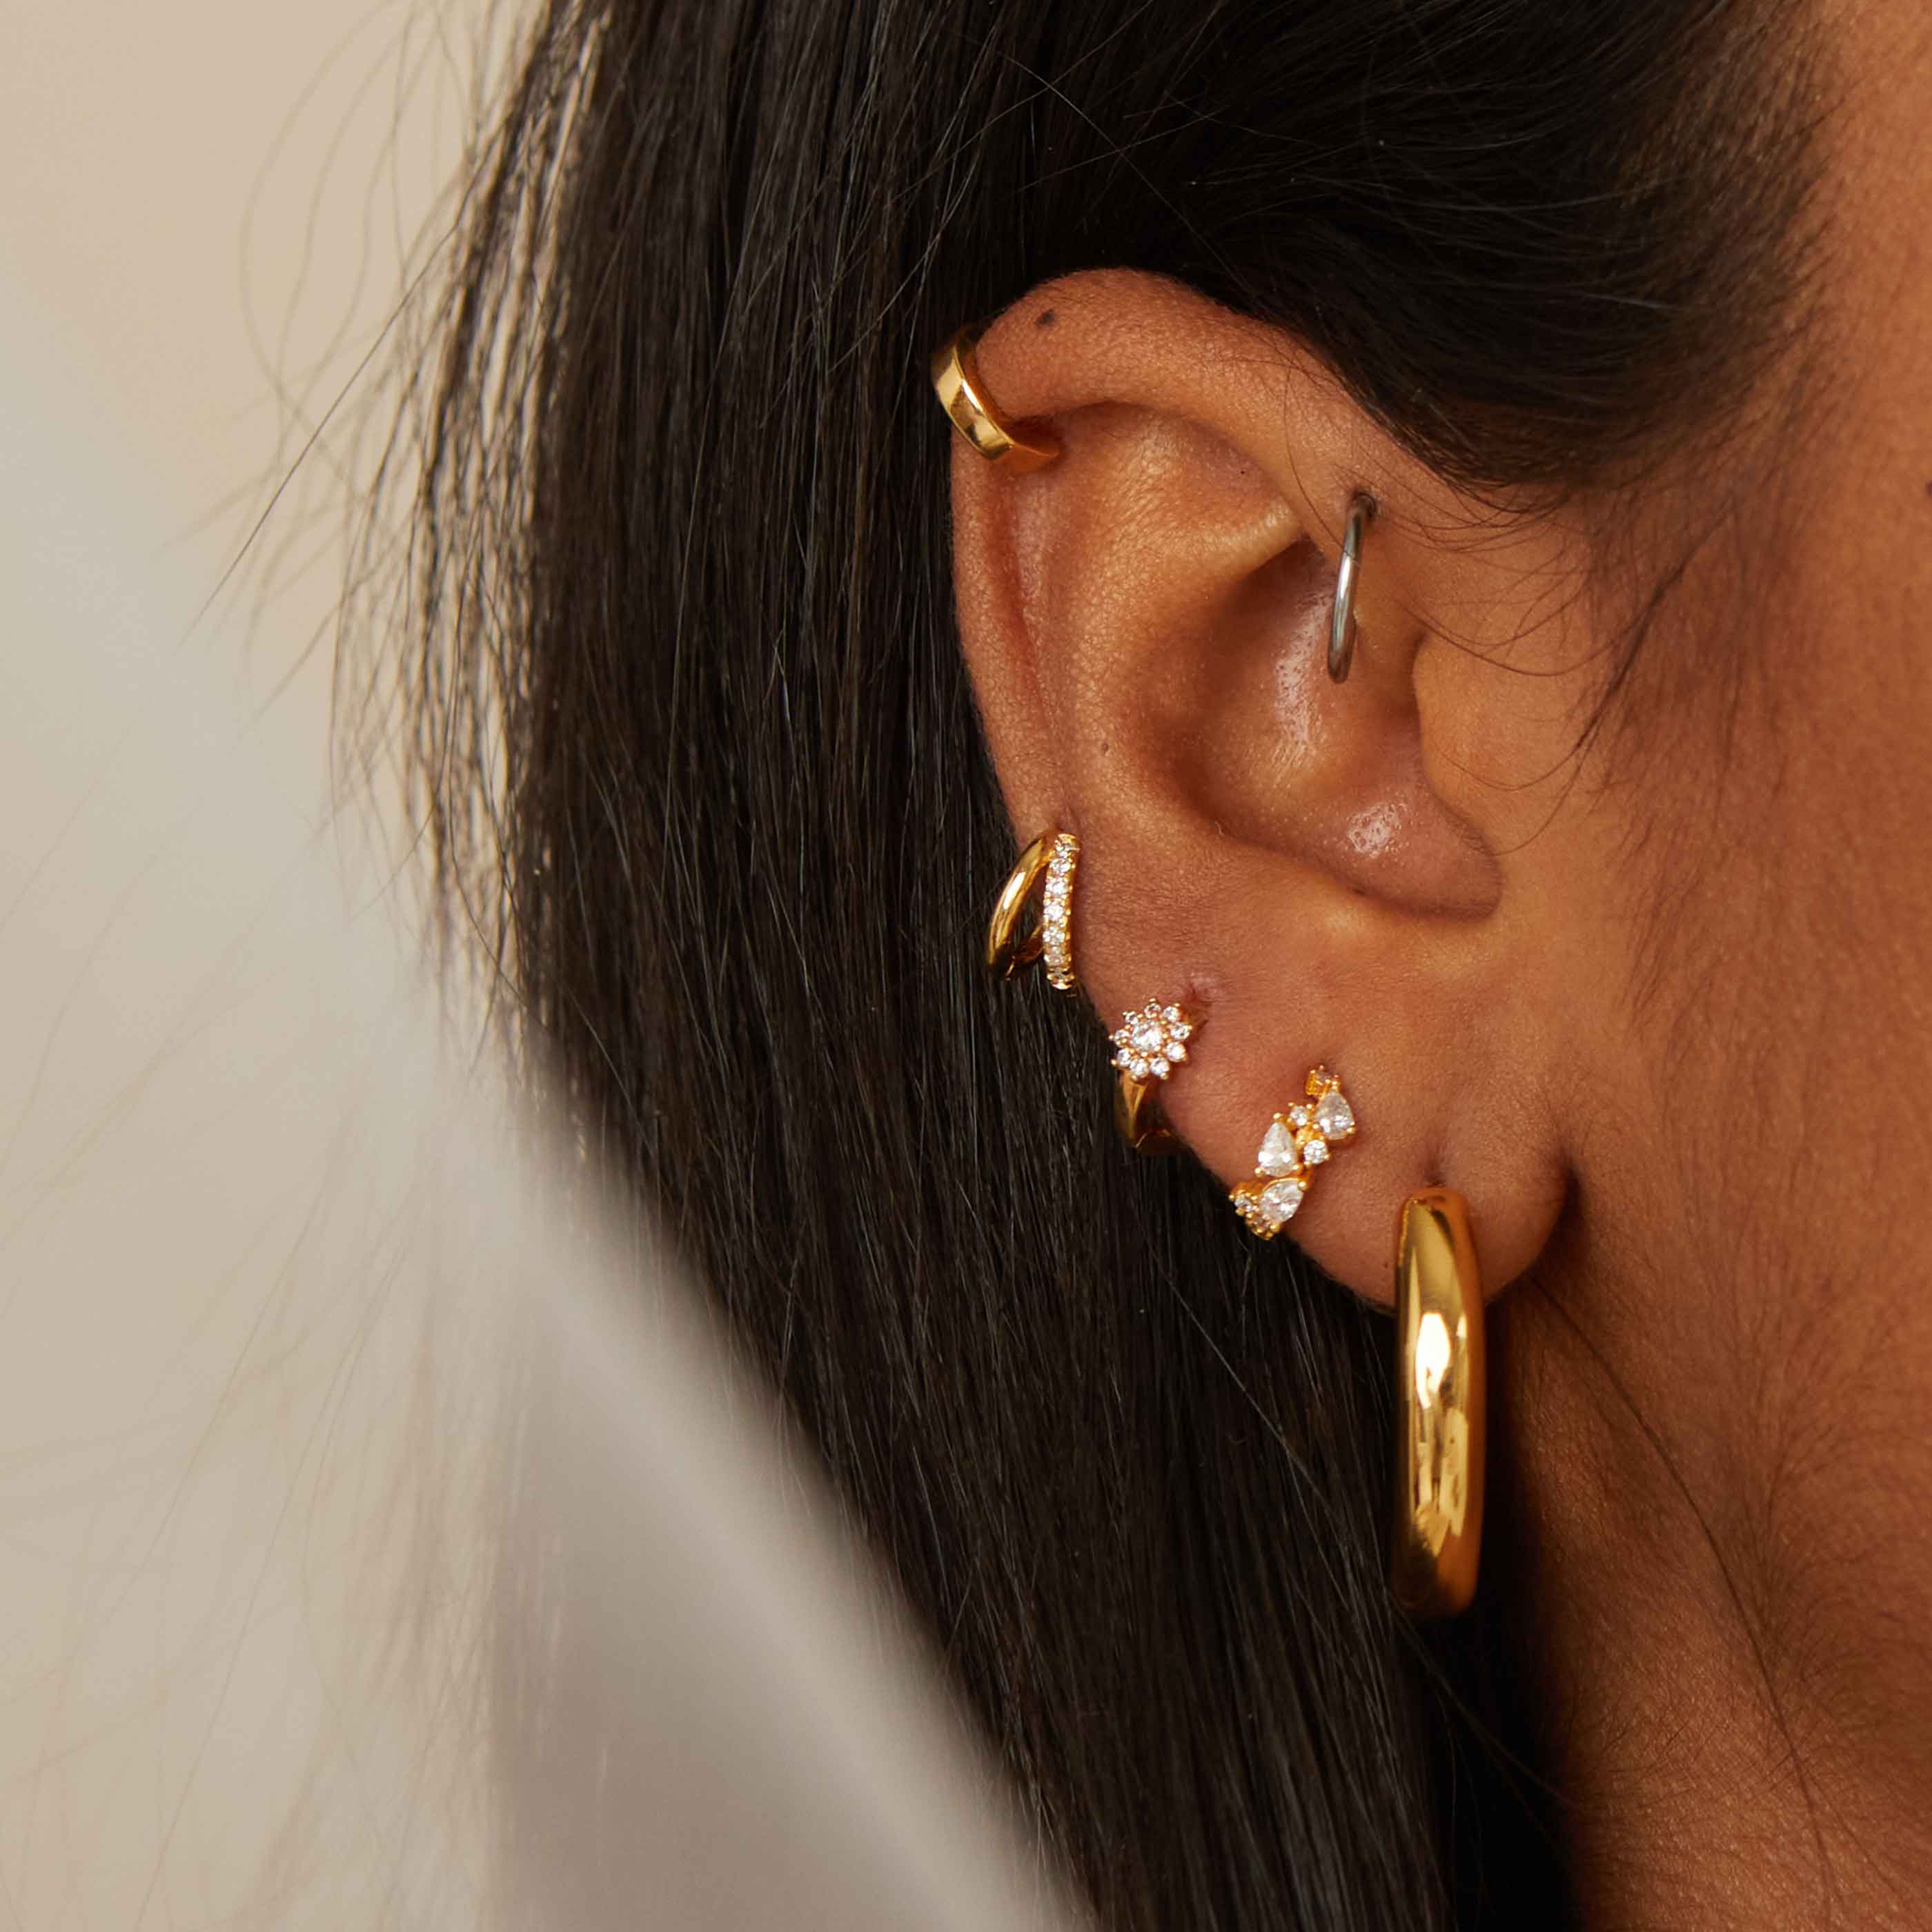 Women's Earrings | Huggie, Hoop & Stud Earrings | ASOS